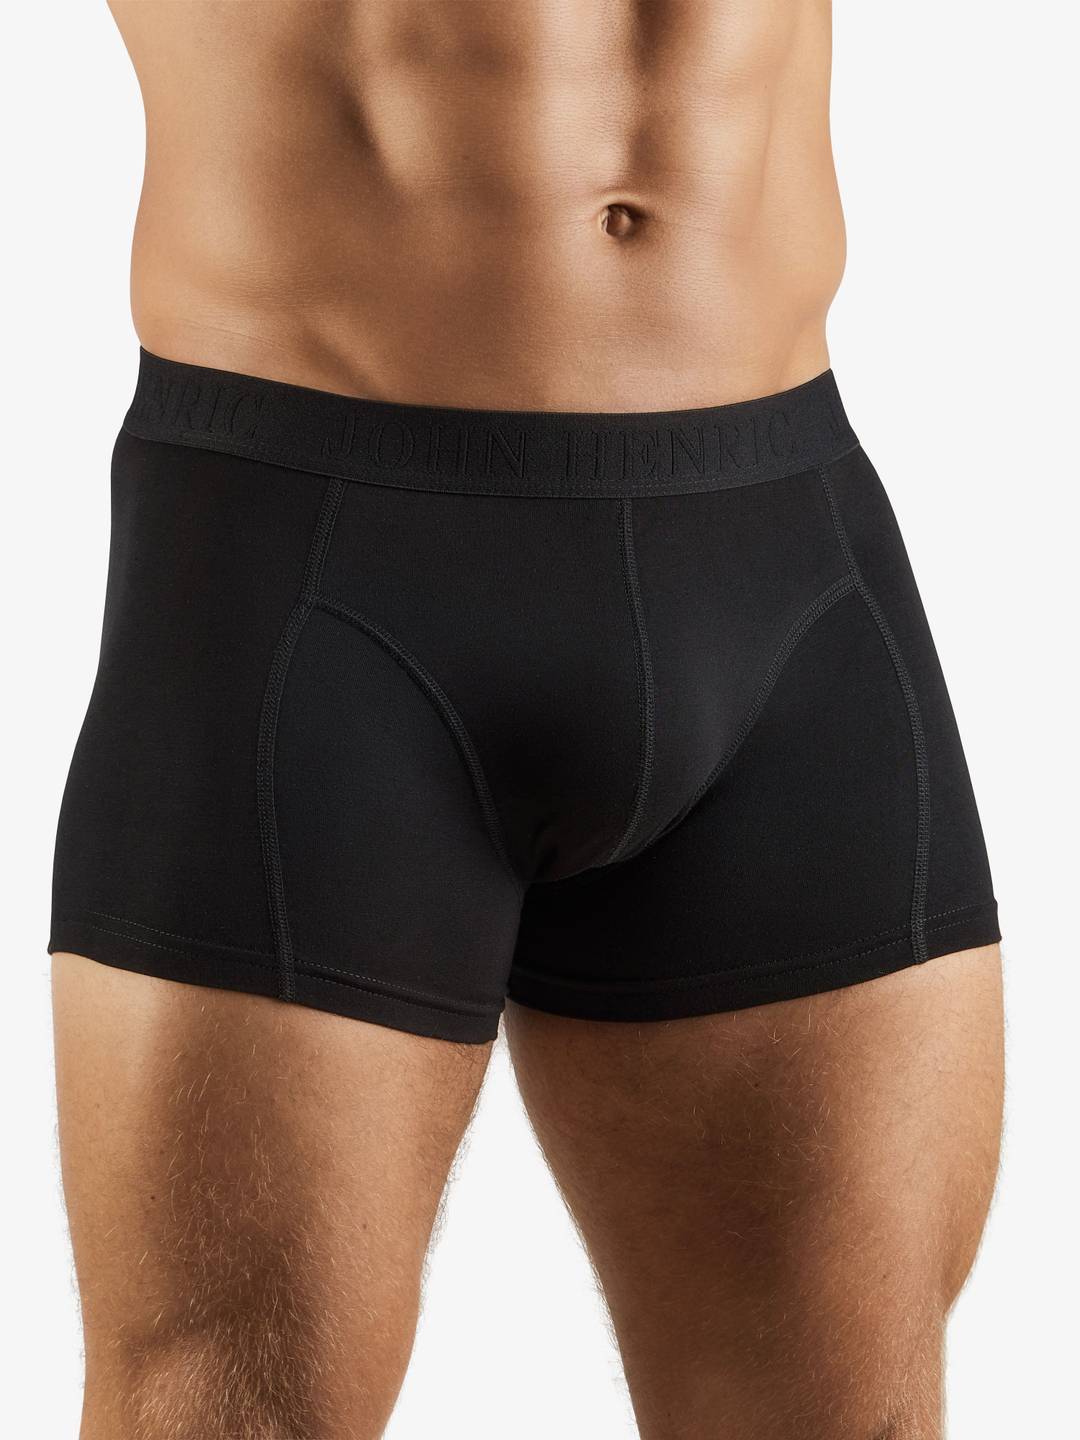 Boxer shorts extra long 2 pcs, Black, Men